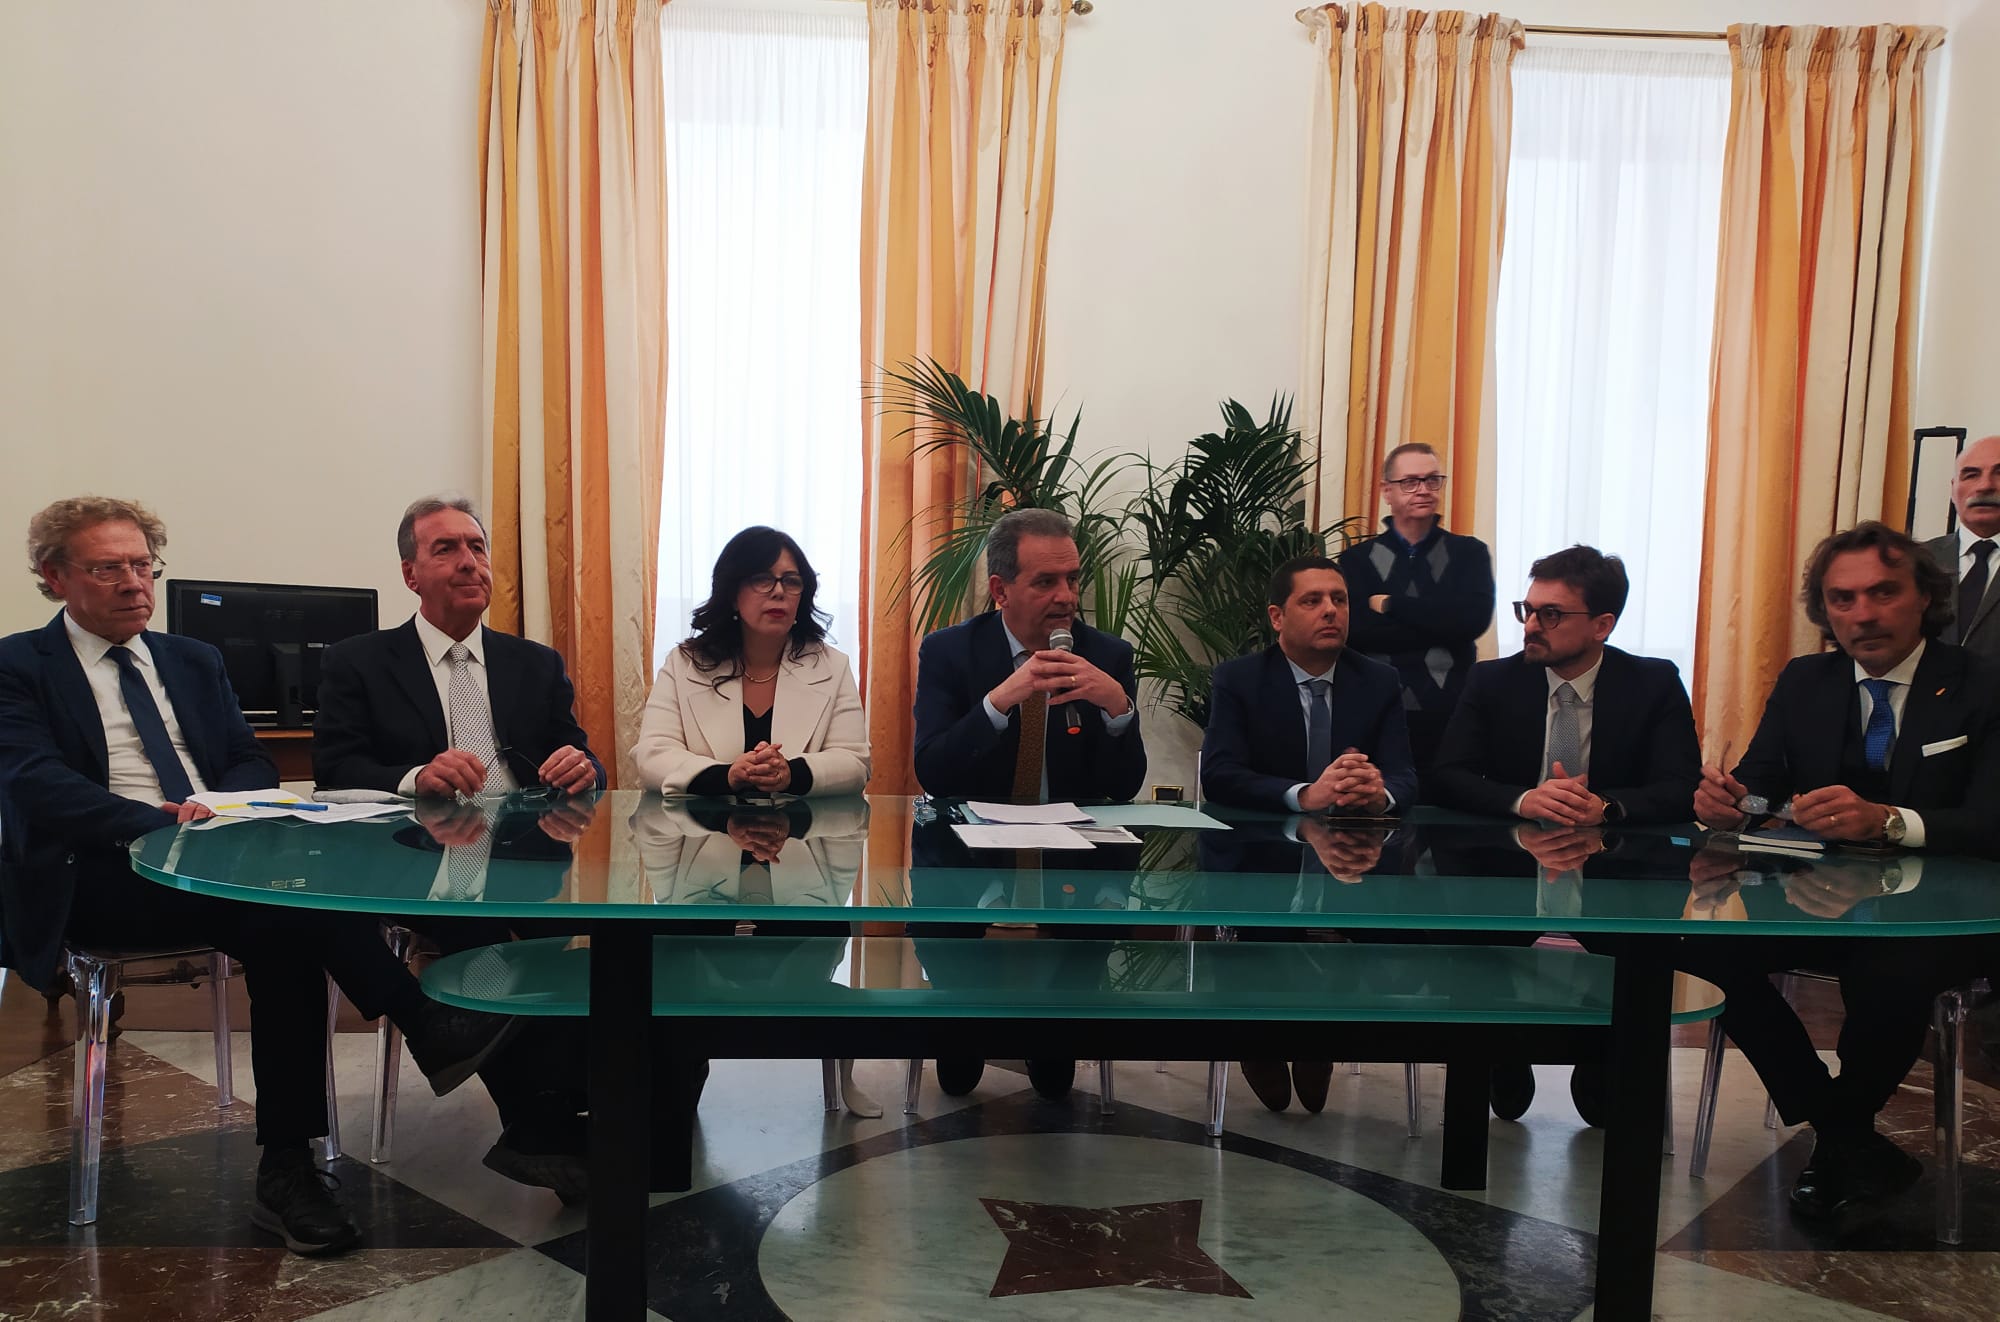 Presentata la nuova Giunta Grillo. Il sindaco: “Ho scelto chi garantiva competenza e piena disponibilità di tempo”